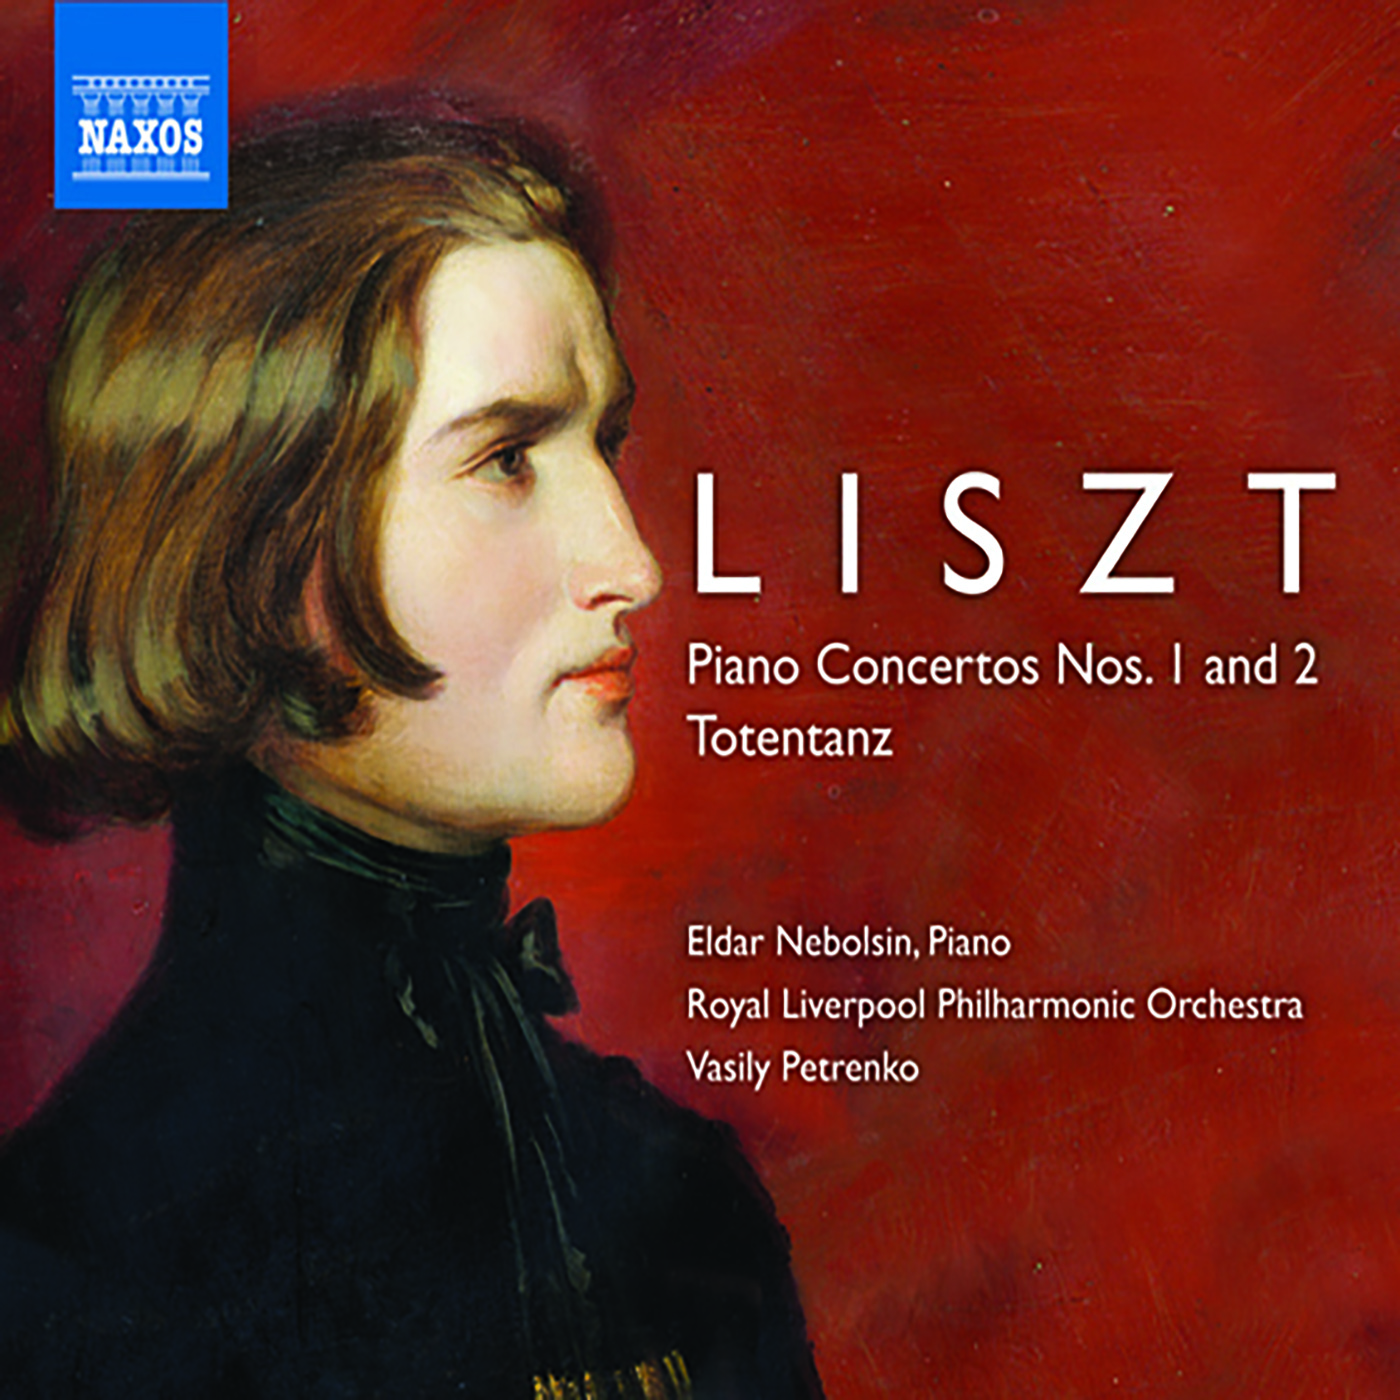 Piano Concerto No. 1 in E-Flat Major, S124/R455:Allegro maestoso - Tempo giusto -